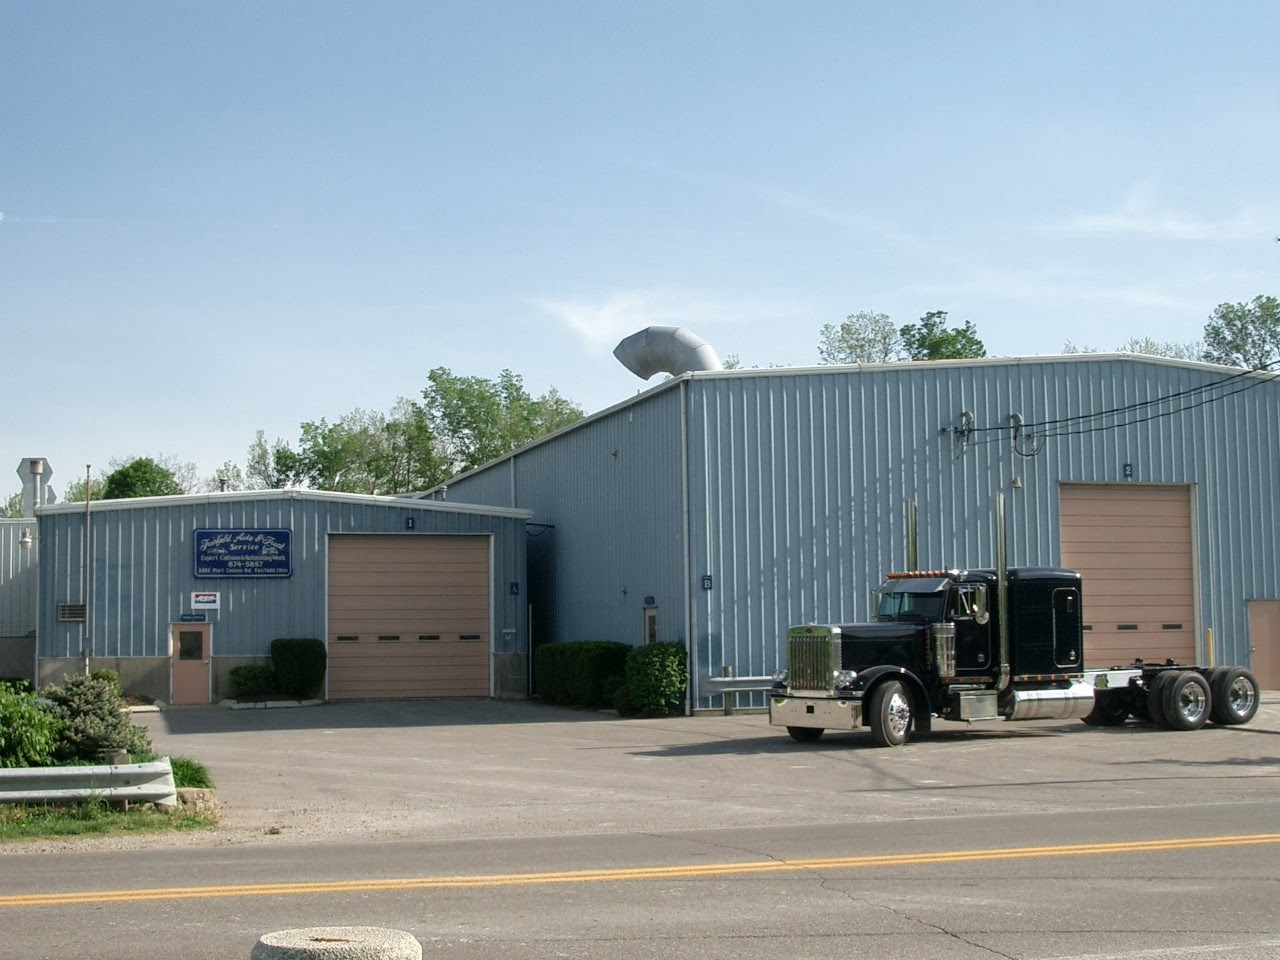 Fairfield Auto & Truck Service, Inc.